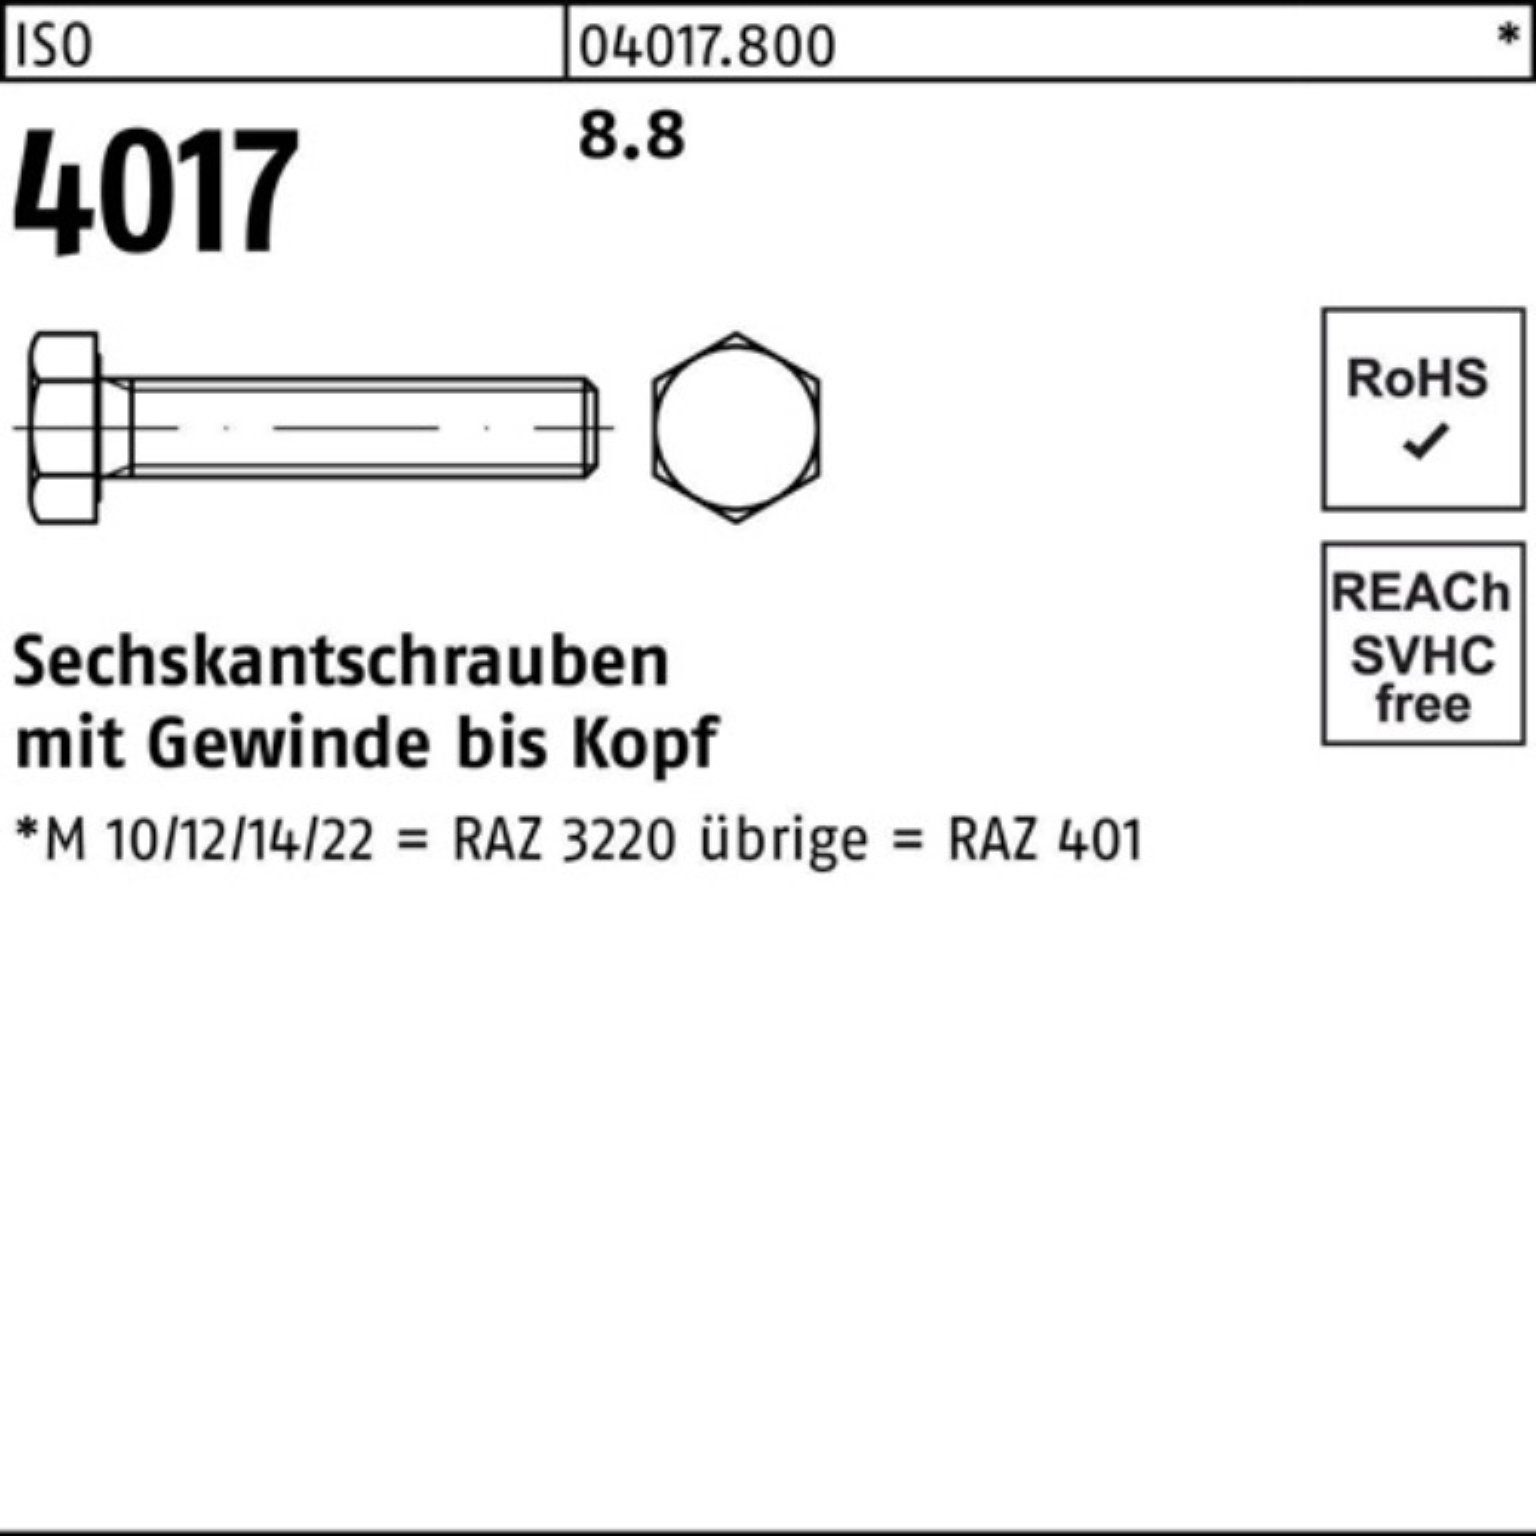 VG Bufab Sechskantschraube 40 Pack 110 Stück 4017 100er ISO M24x ISO 10 8.8 Sechskantschraube